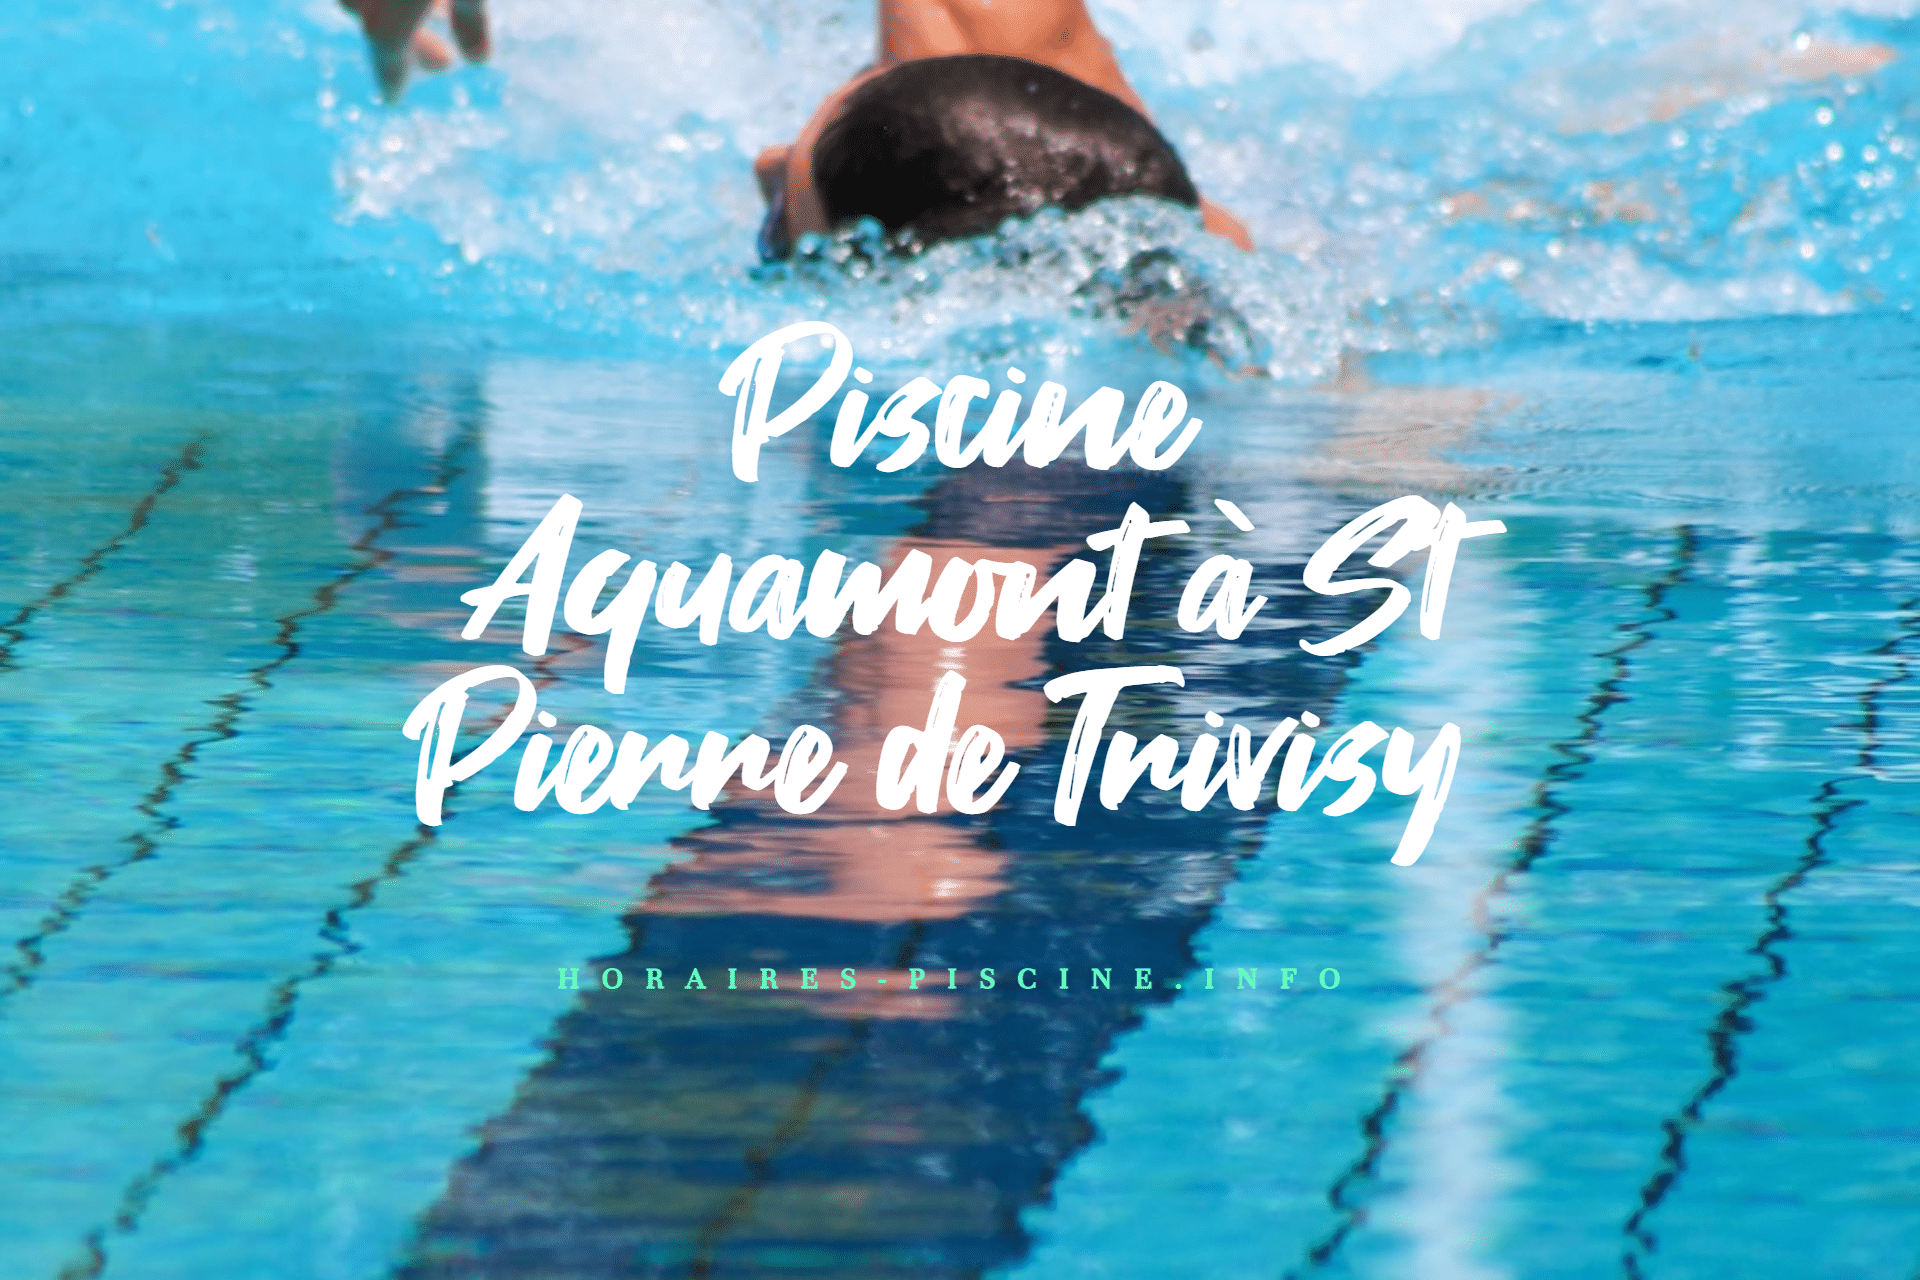 Piscine Aquamont à St Pierre de Trivisy